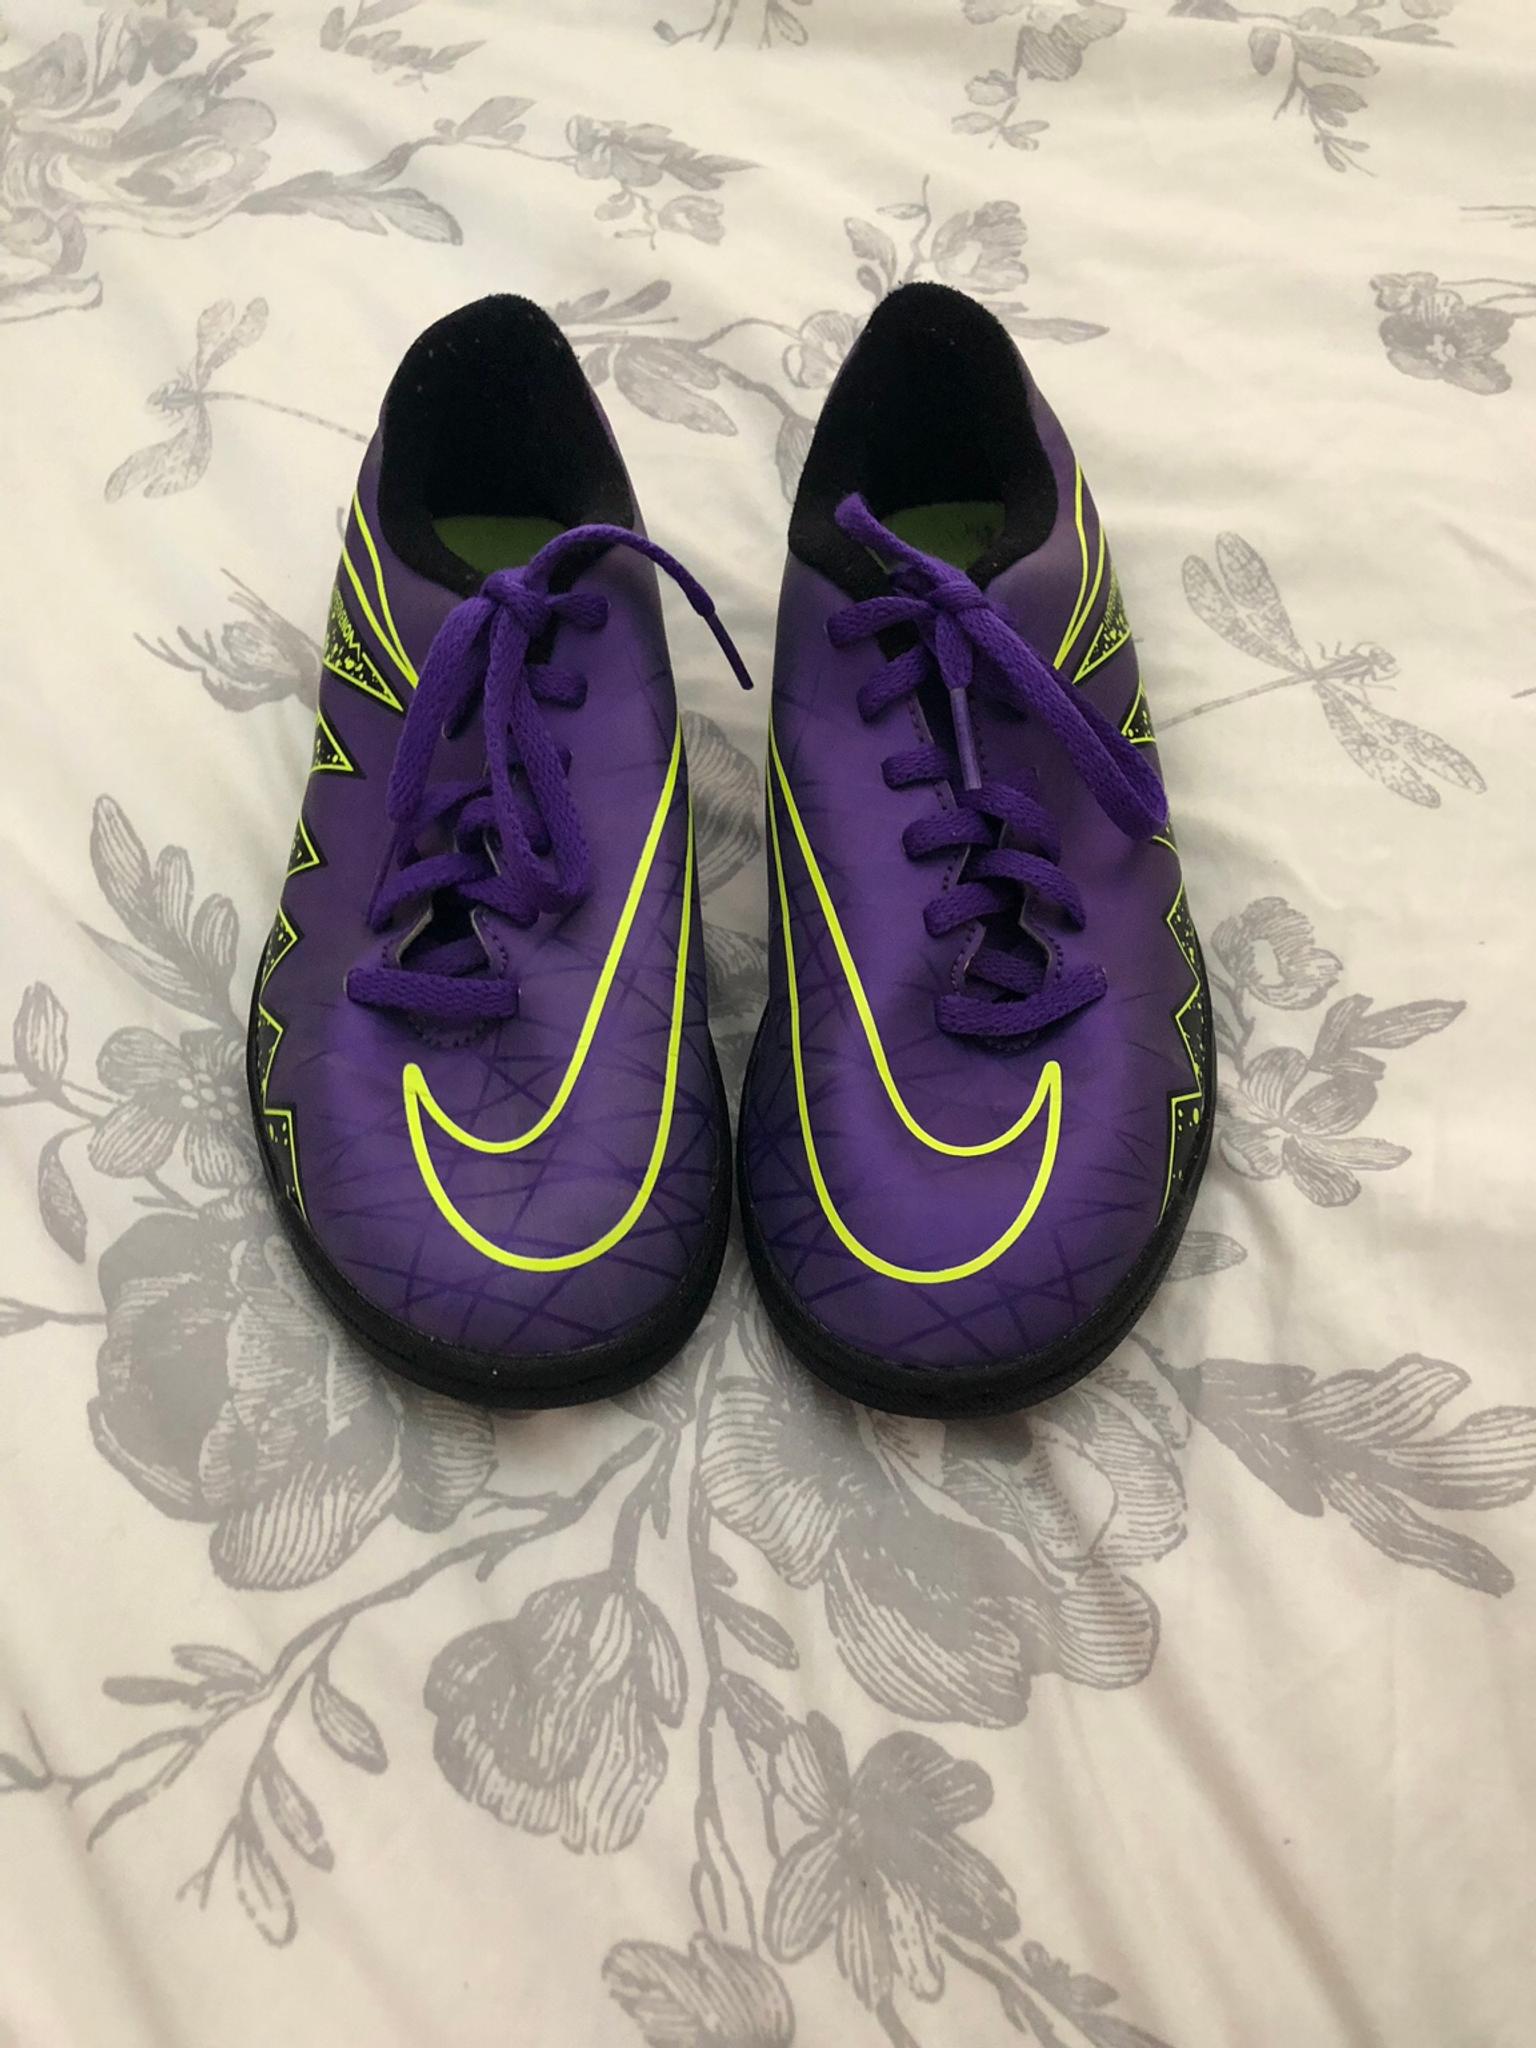 purple nike turf shoes